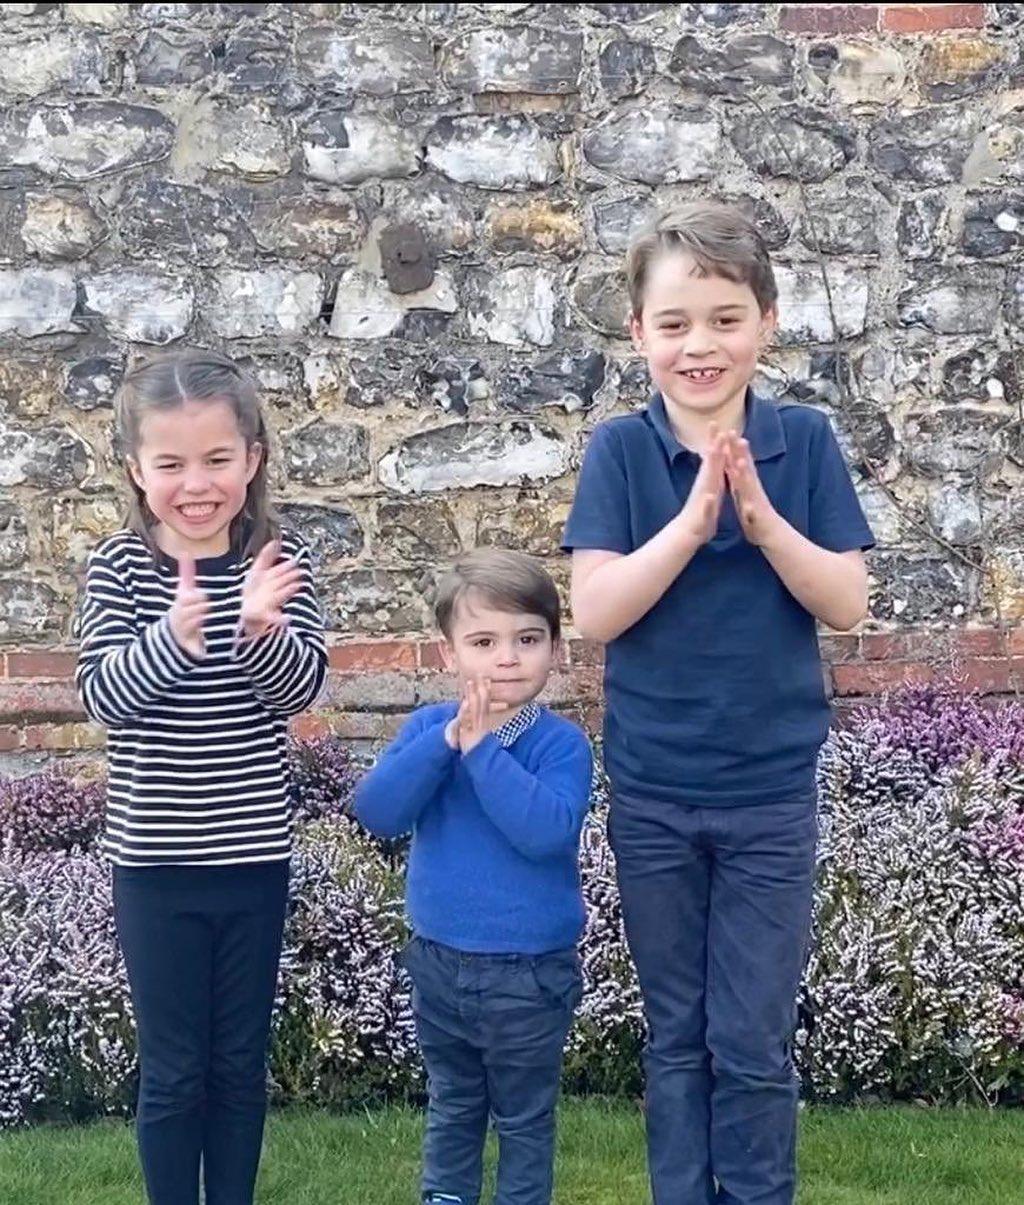 Дети принца Уильяма и Кейт Миддлтон будут учиться дома и после отмены карантина